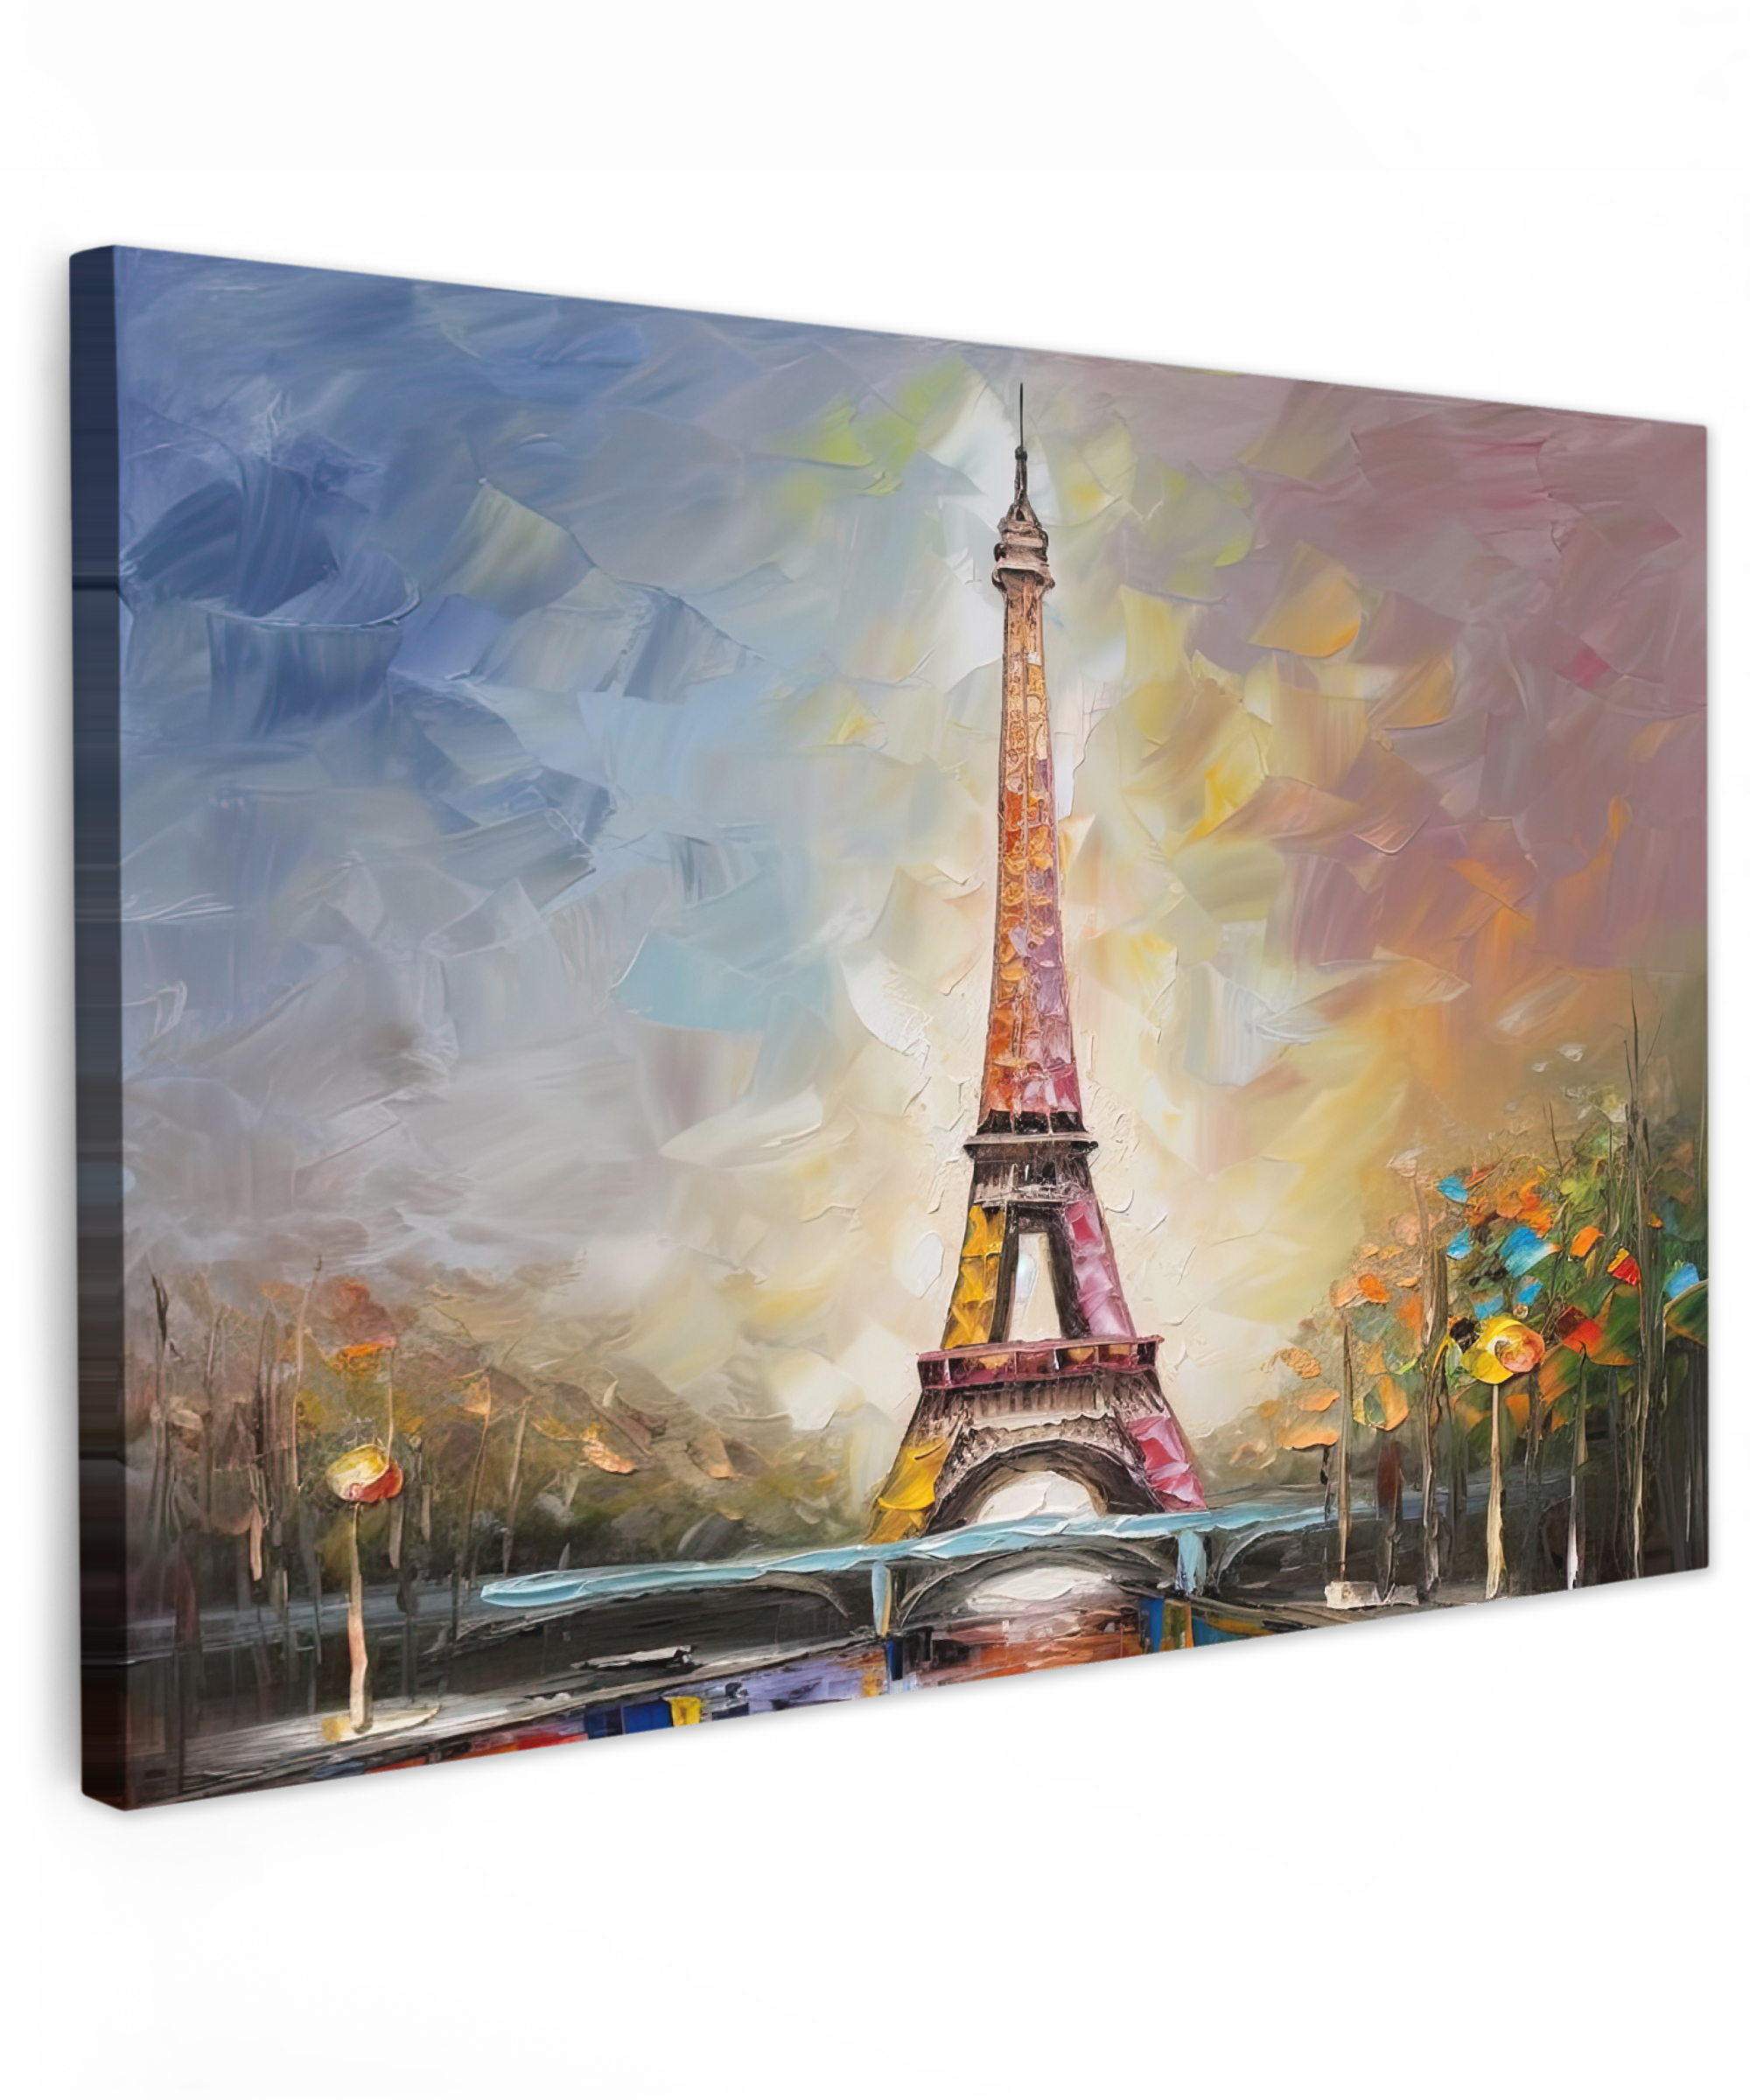 Tableau sur toile - Tour Eiffel - Peinture - Peinture à l'huile - Paris